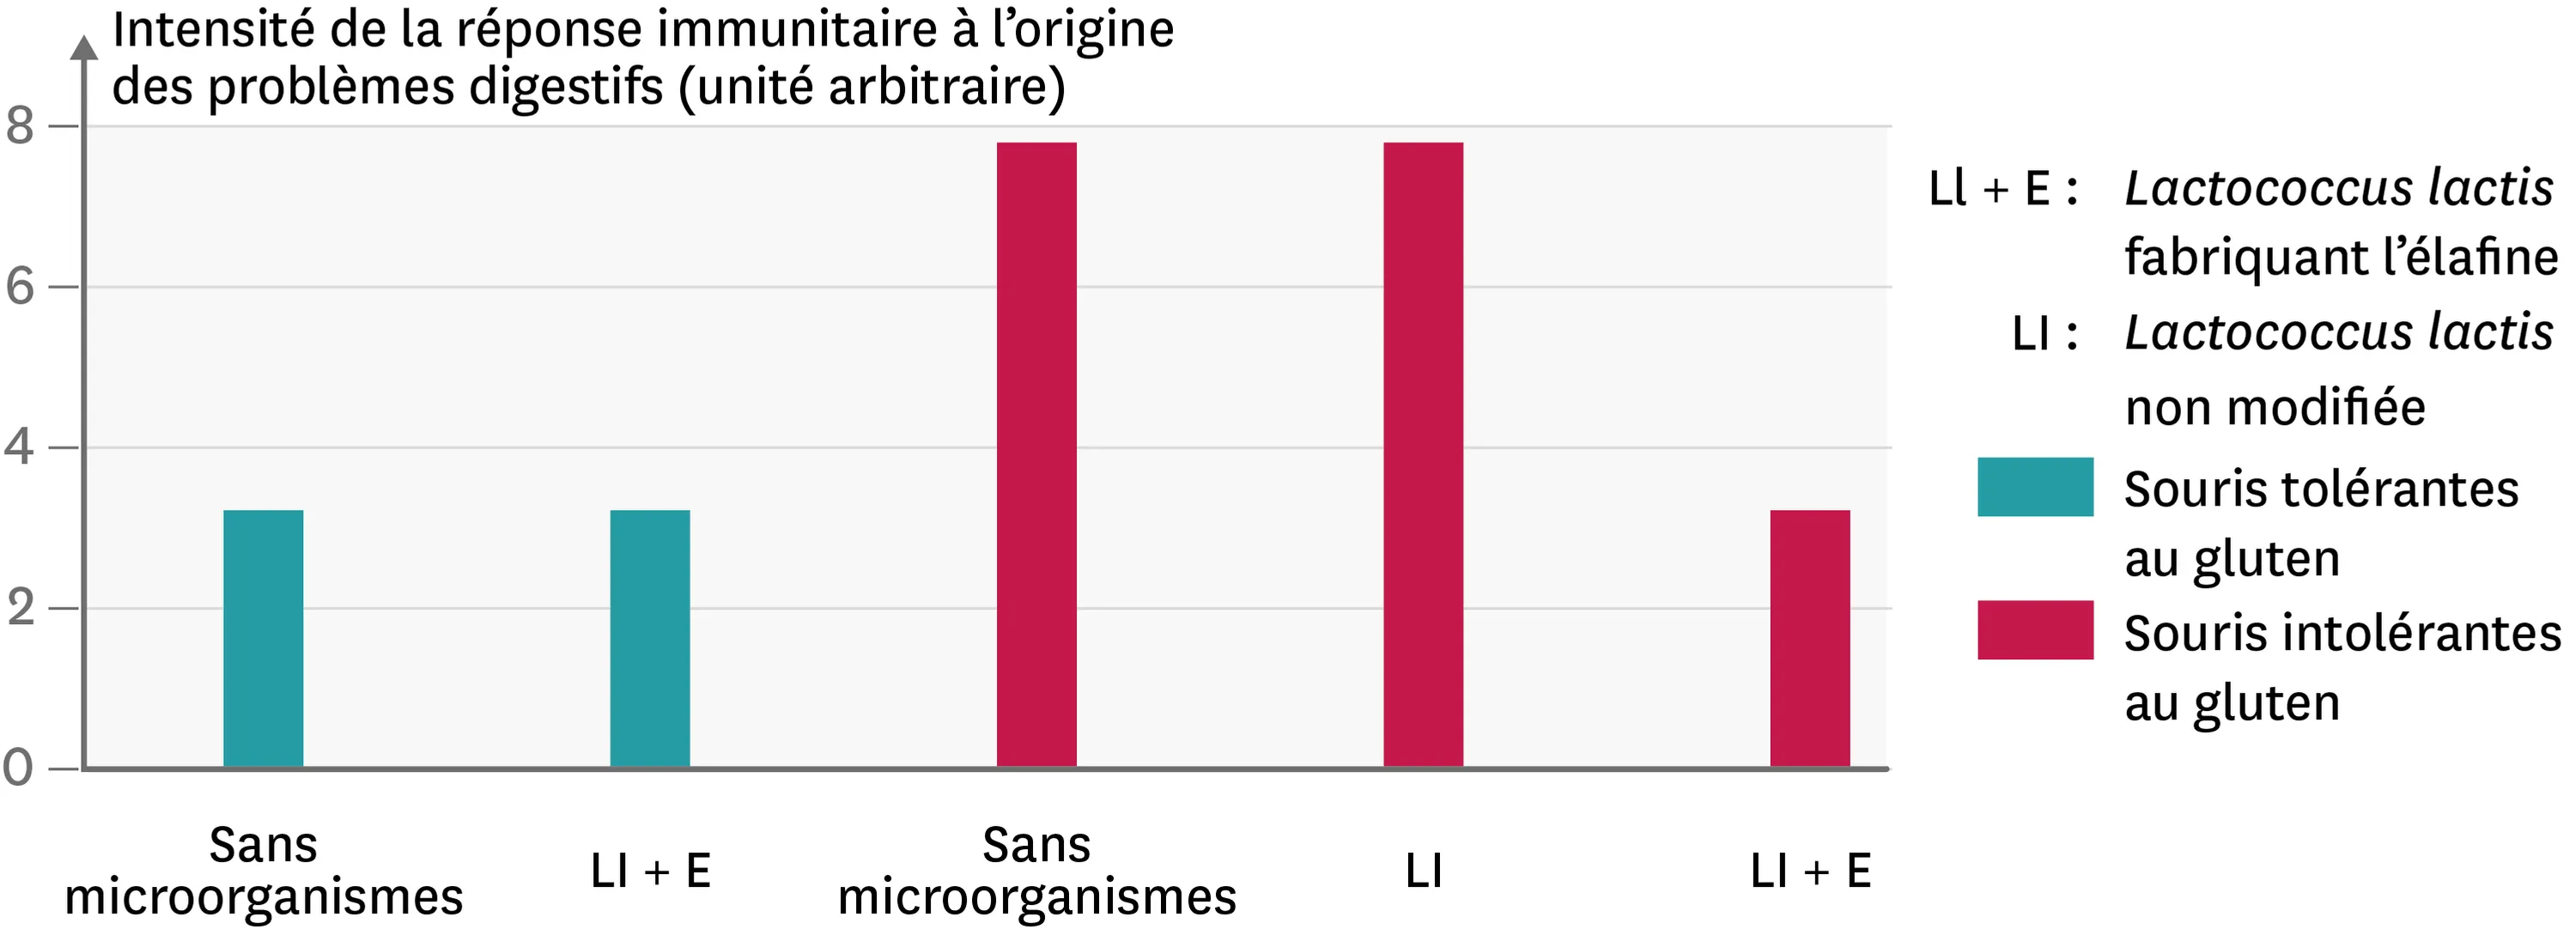 Une comparaison de la réponse immunitaire suite à l'ajout de divers microorganismes dans l'alimentation de souris intolérantes ou non au gluten.